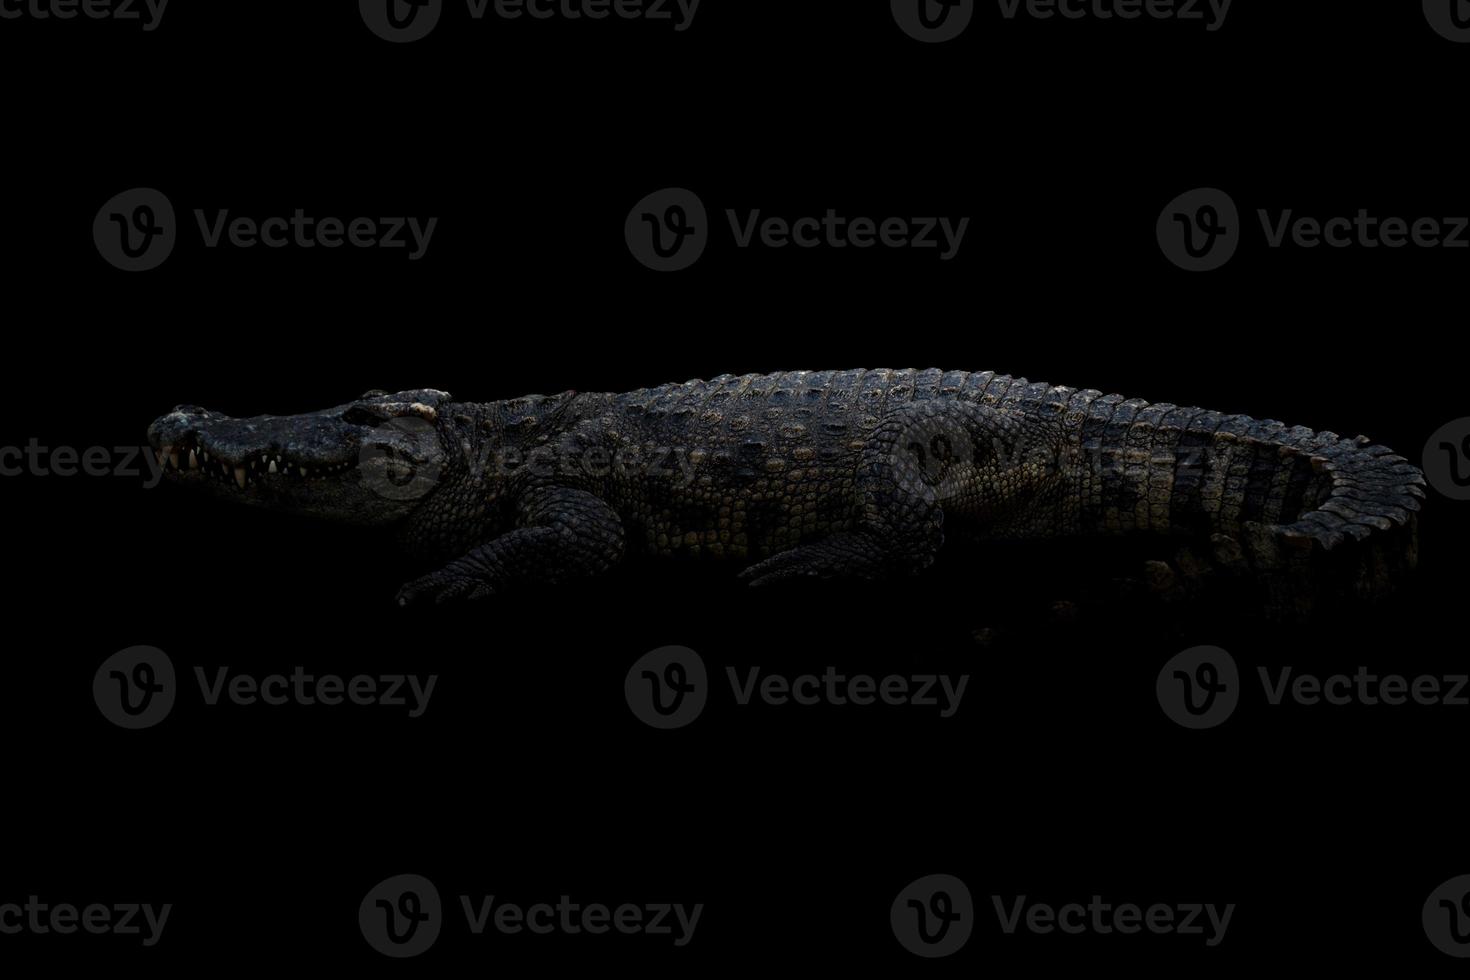 siames krokodil i mörkret foto